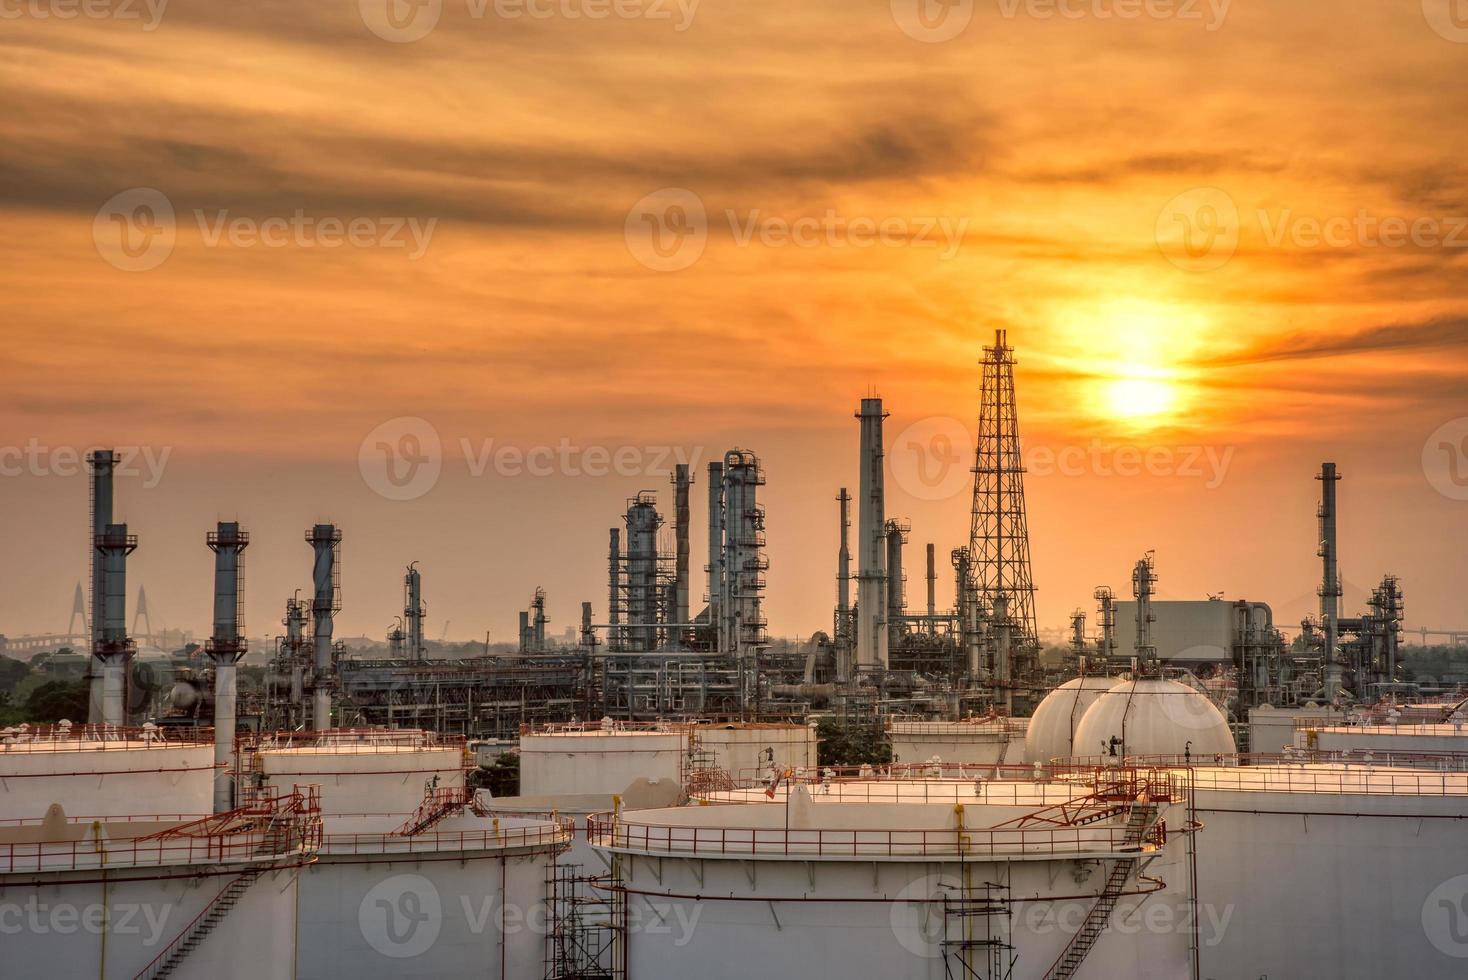 planta petroquímica industria de petróleo y gas foto